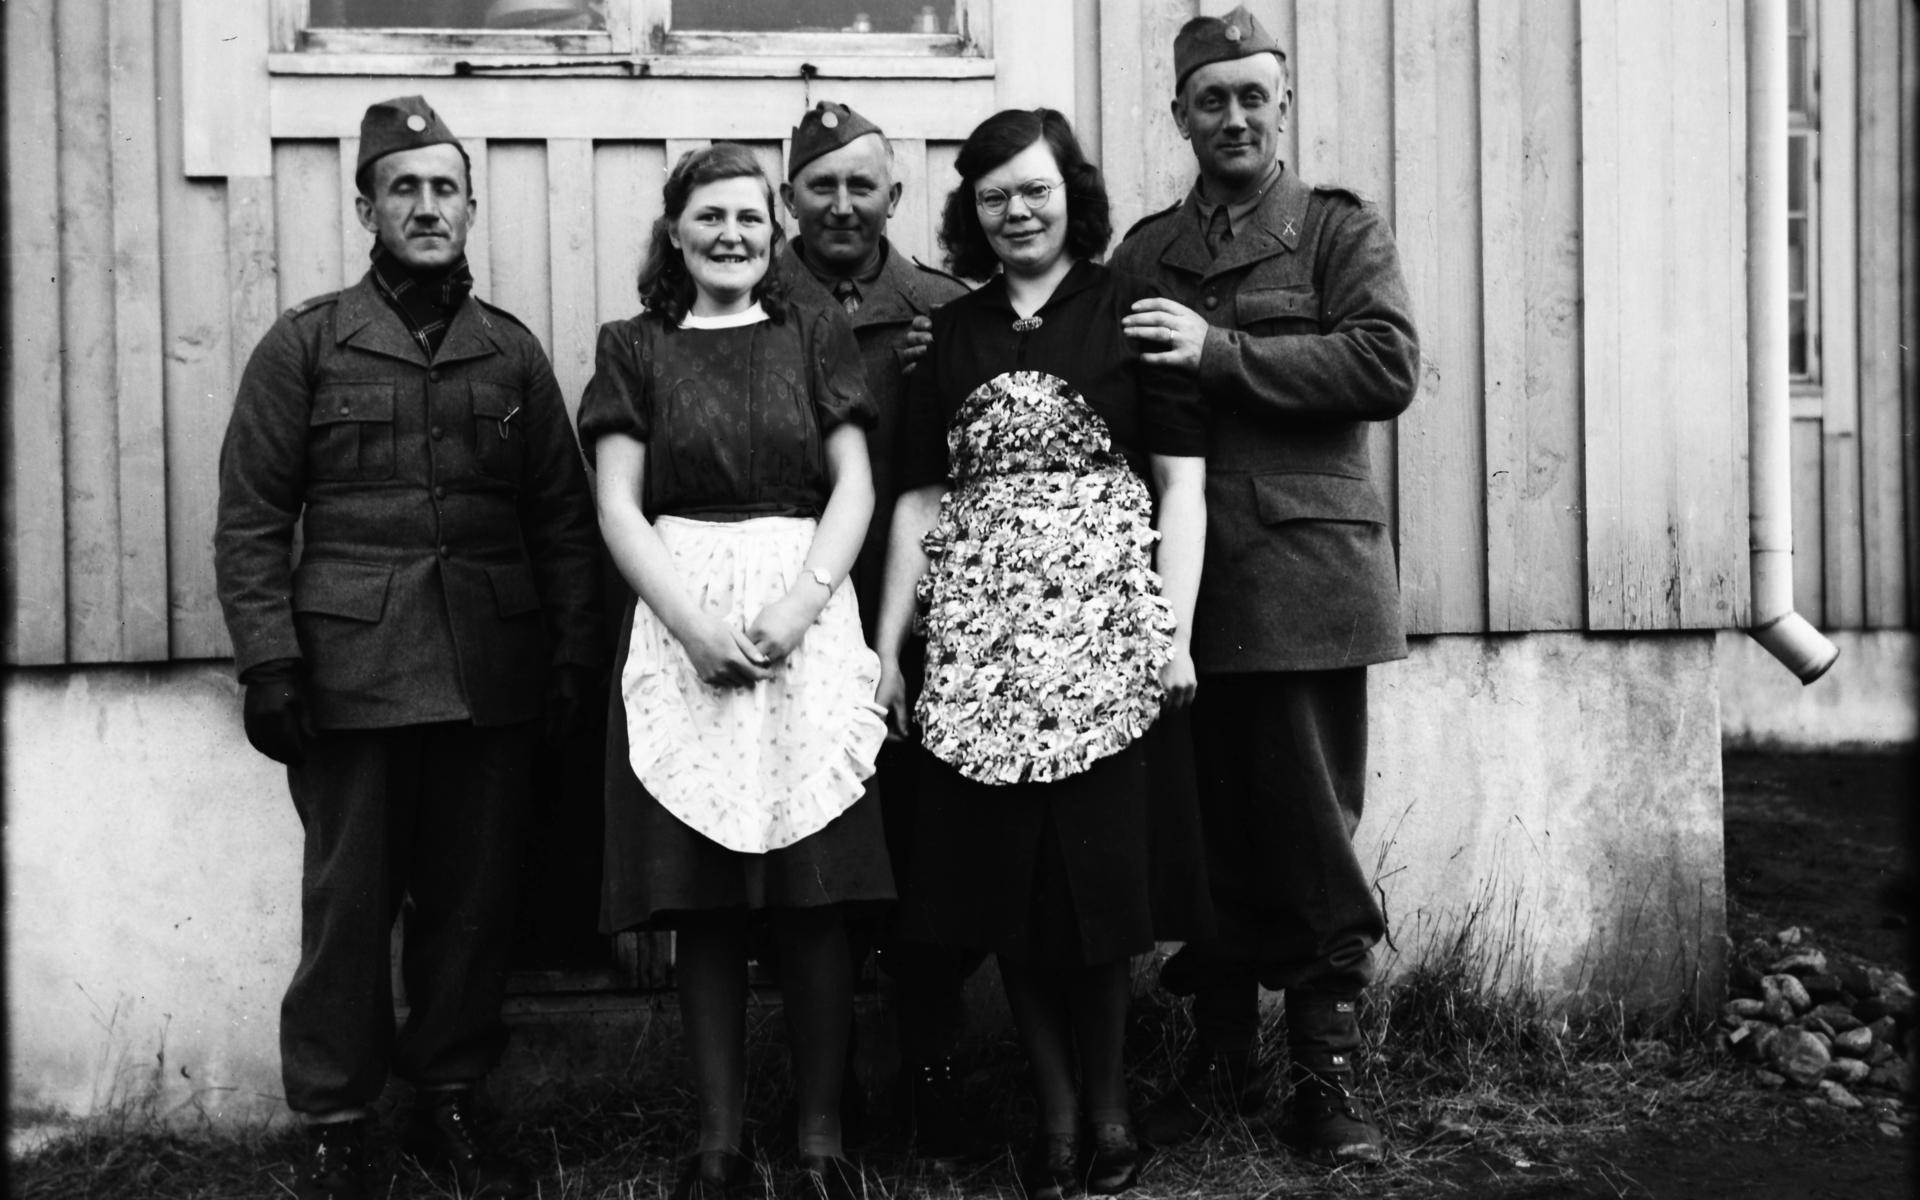 Tre beredskapsmän och två kvinnor, som av förklädena att döma hade kökstjänst, fotograferade av Erik ”Kloar-Erik” Andersson.